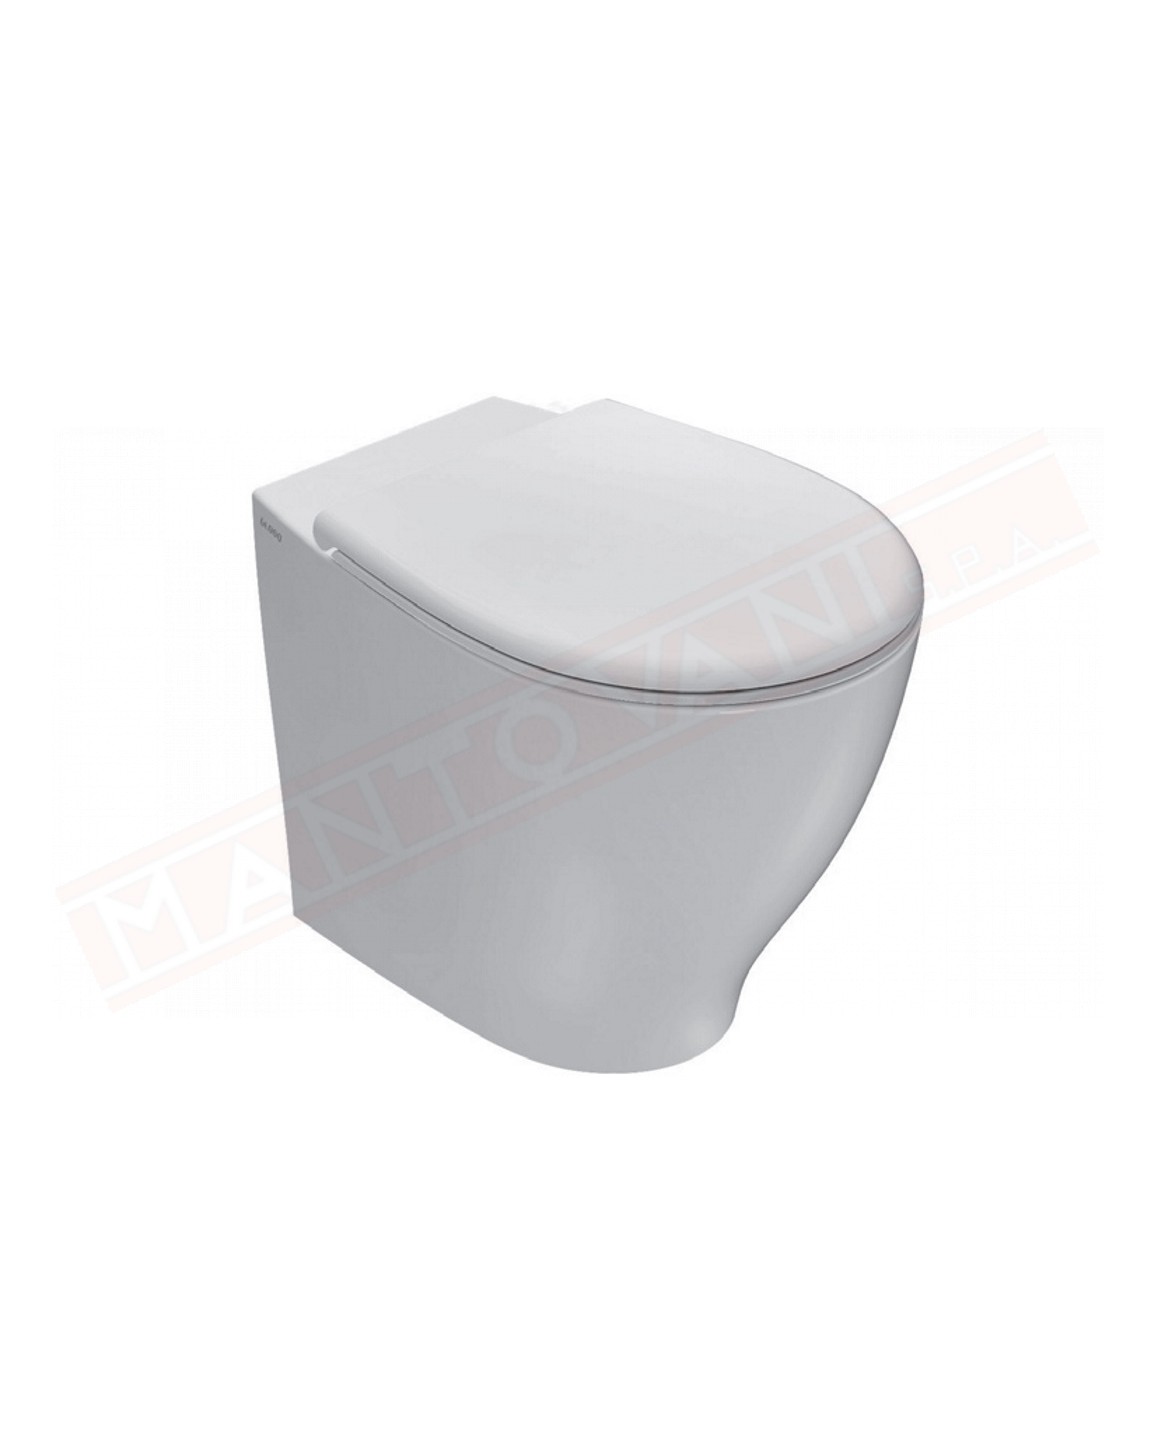 Globo vaso terra Bowl+ cm 55x38 bianco Sanitari bagno Ceramica Globo con smalto Bataform e Ceraslide